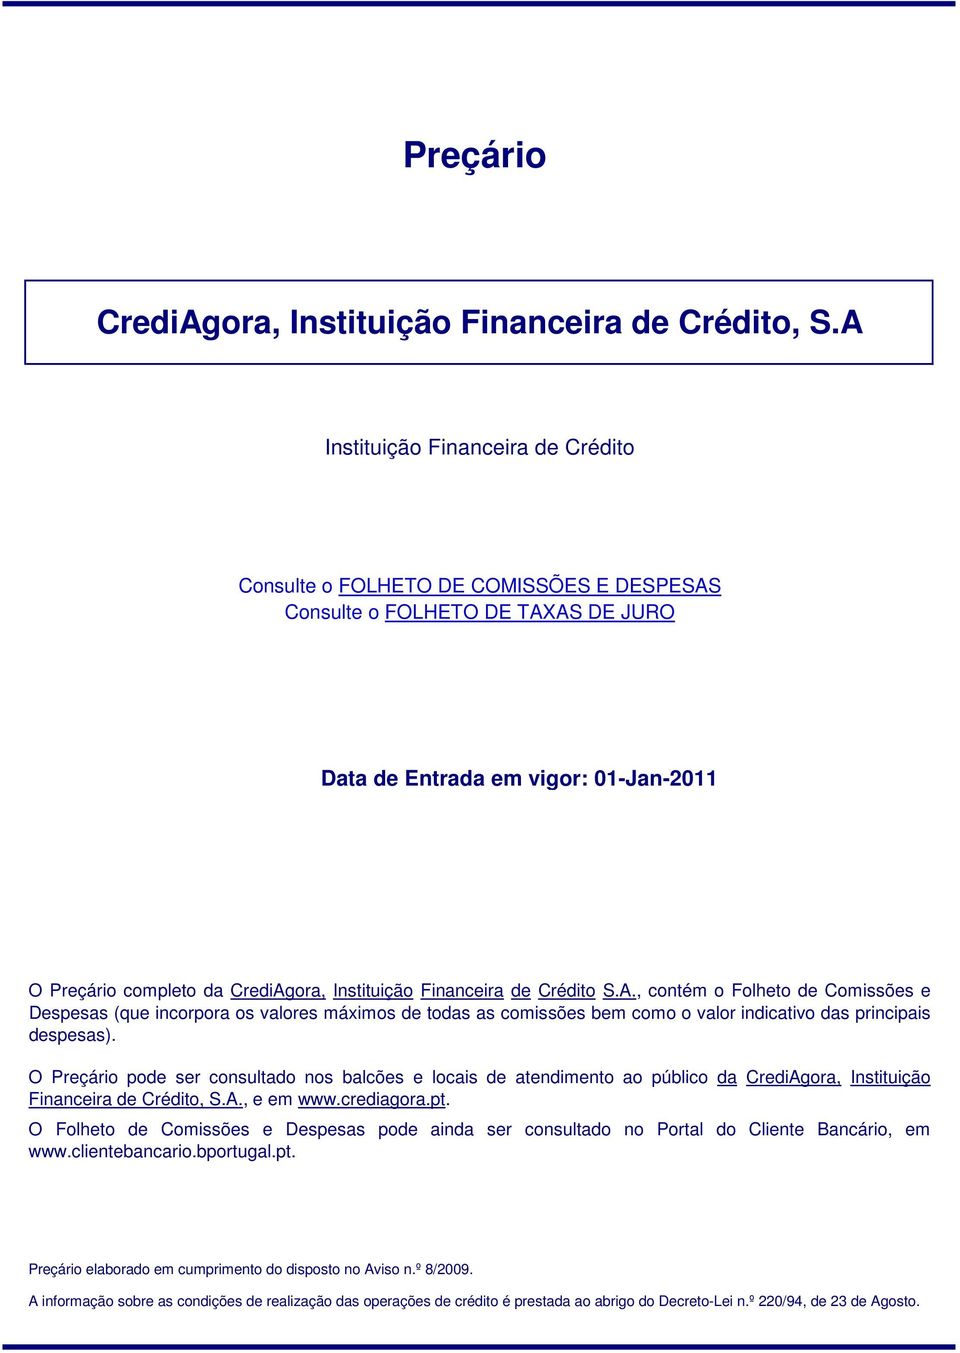 O Preçário pode ser consultado nos balcões e locais de atendimento ao público da CrediAgora, Instituição Financeira de Crédito, S.A., e em www.crediagora.pt.